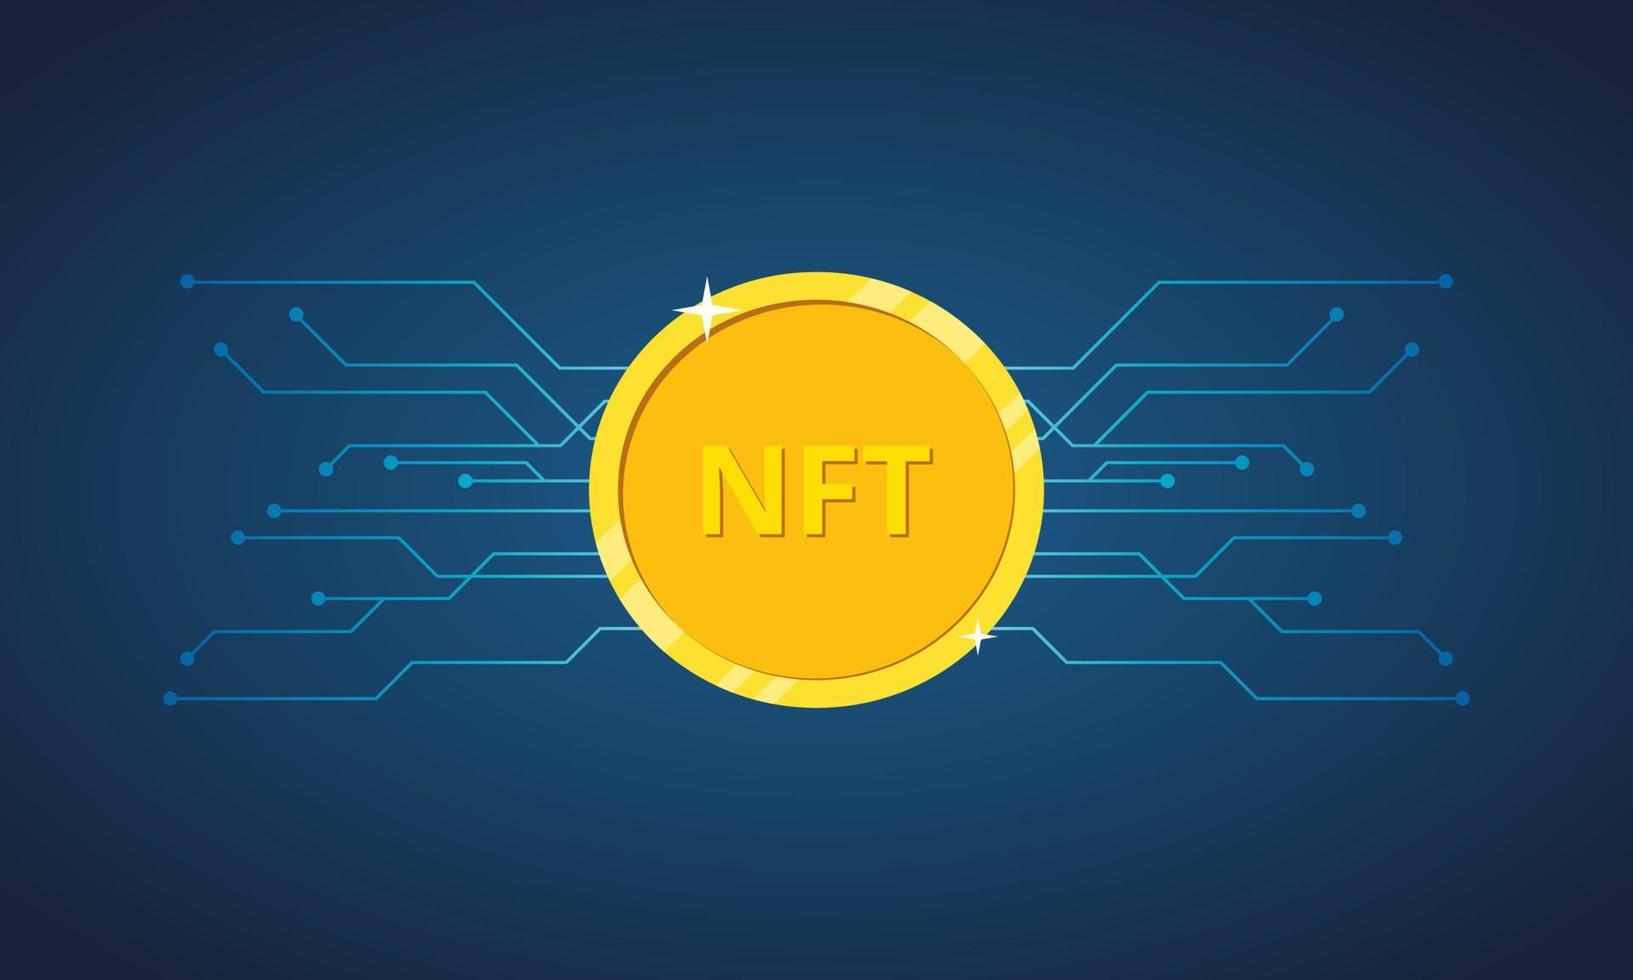 NFT non fungible token. Nft golden coin icon. Non-renewable token. Crypto art. Vector illustration